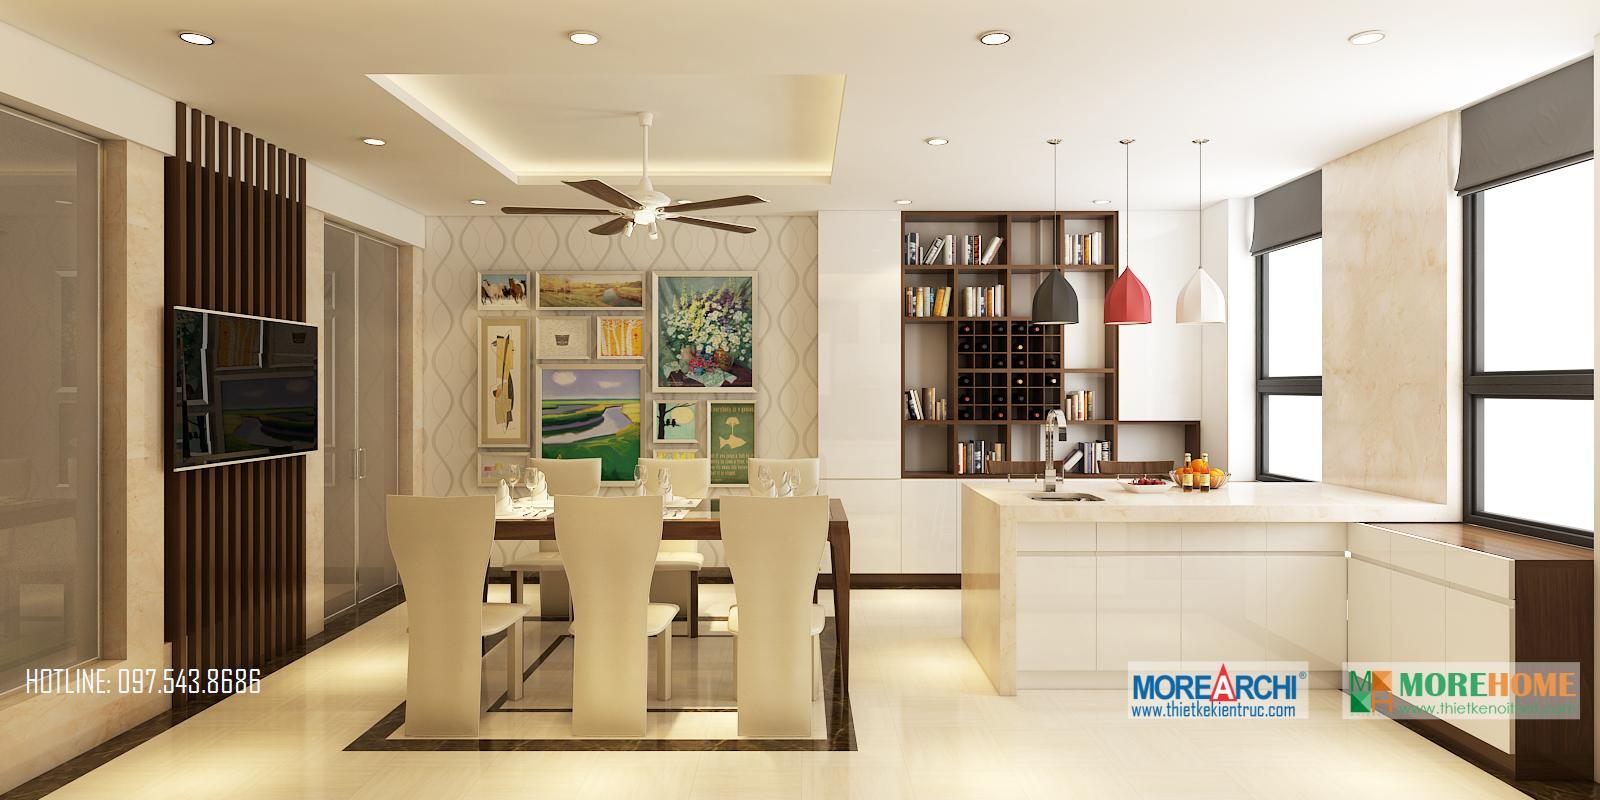 Thiết kế nội thất phòng bếp nhà phố hiện đại Trần Duy Hưng Trung Hòa Cầu Giấy Hà Nội